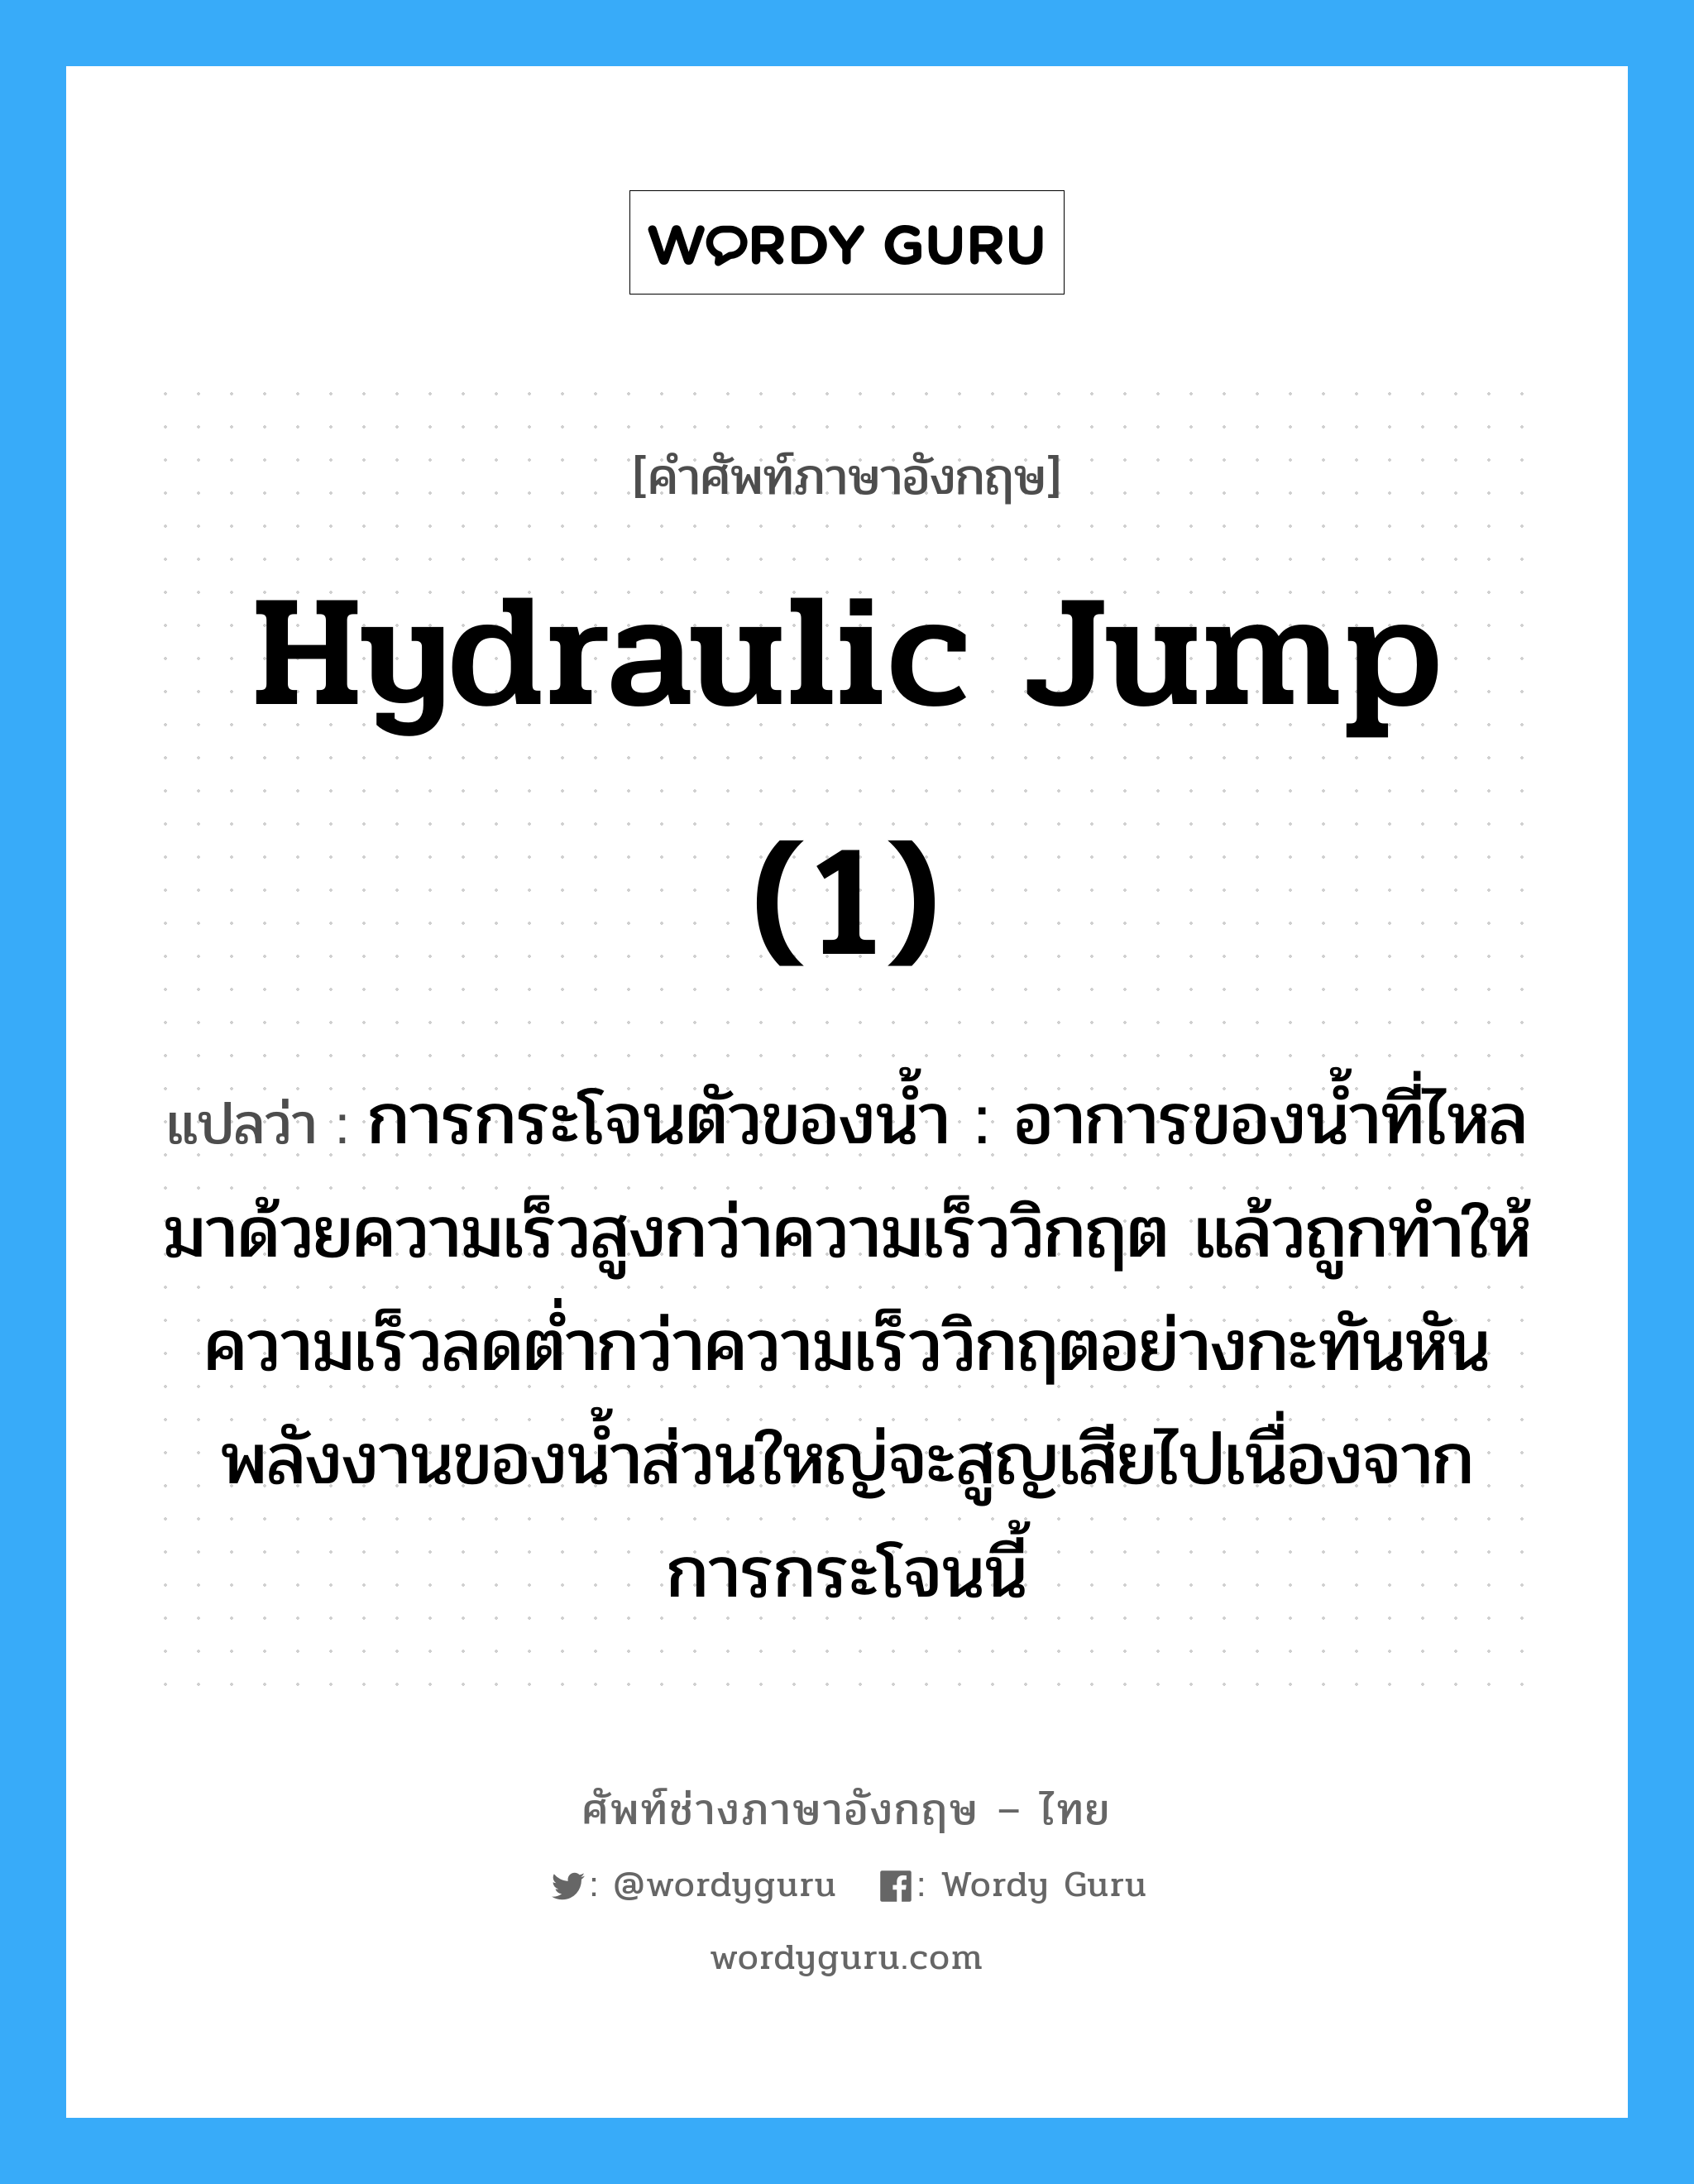 hydraulic jump (1) แปลว่า?, คำศัพท์ช่างภาษาอังกฤษ - ไทย hydraulic jump (1) คำศัพท์ภาษาอังกฤษ hydraulic jump (1) แปลว่า การกระโจนตัวของน้ำ : อาการของน้ำที่ไหลมาด้วยความเร็วสูงกว่าความเร็ววิกฤต แล้วถูกทำให้ความเร็วลดต่ำกว่าความเร็ววิกฤตอย่างกะทันหัน พลังงานของน้ำส่วนใหญ่จะสูญเสียไปเนื่องจากการกระโจนนี้